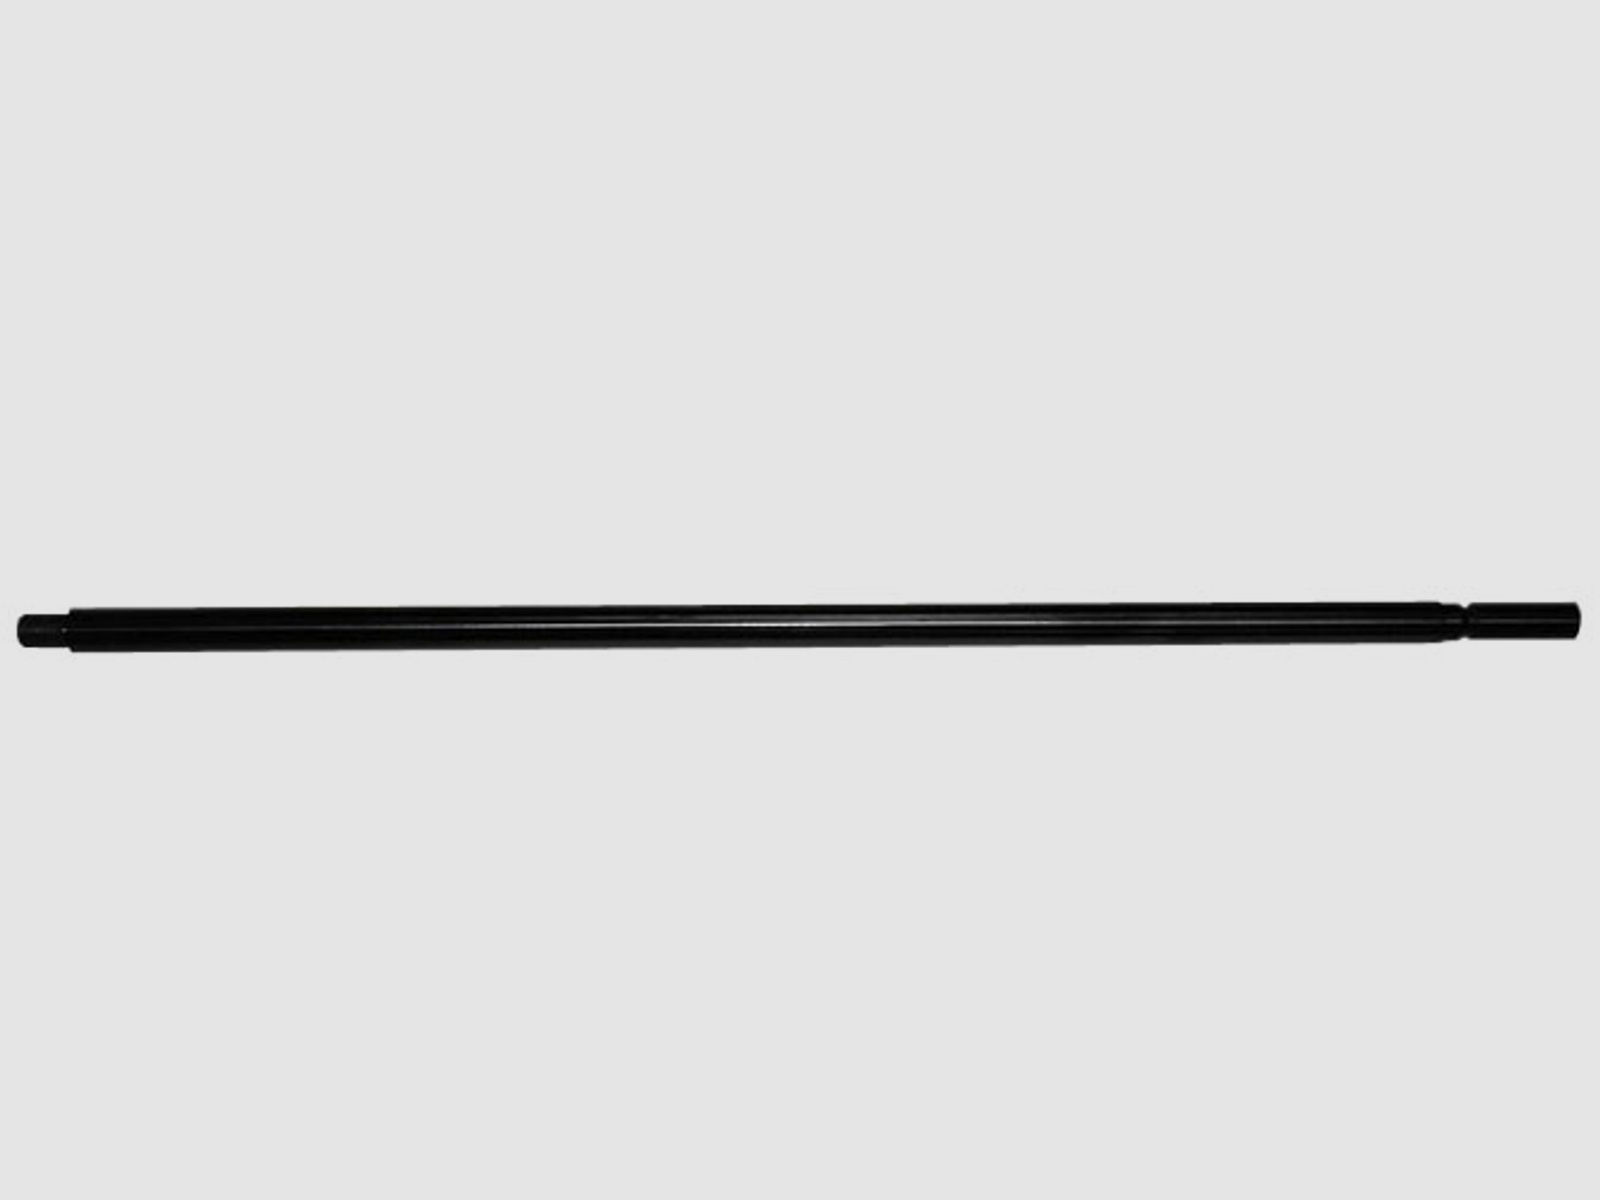 Wechsellauf Weihrauch HW 100 mit SchalldĂ¤mpfergewinde 60 cm Kaliber 5,5 mm (P18)